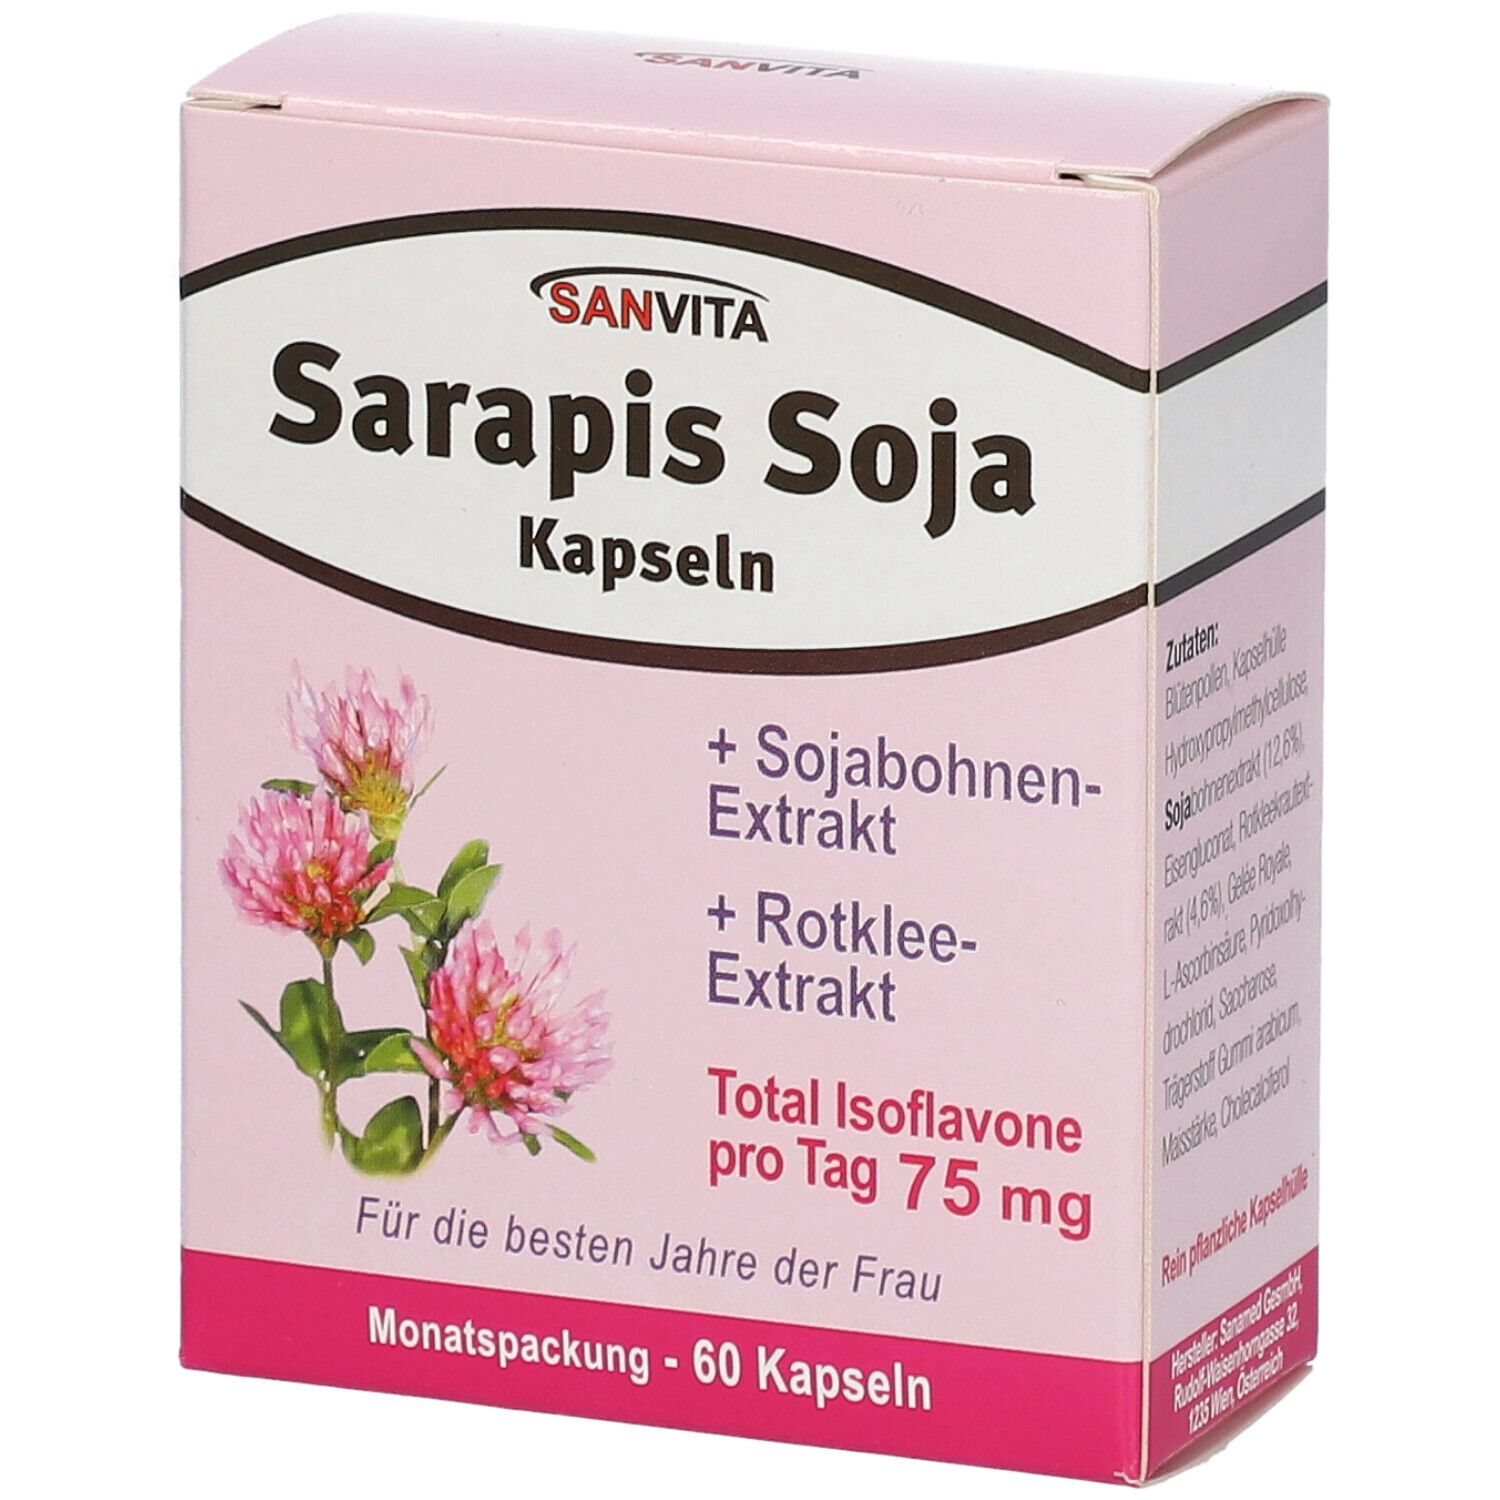 Image of SANVITA Saraois Soja Kapseln